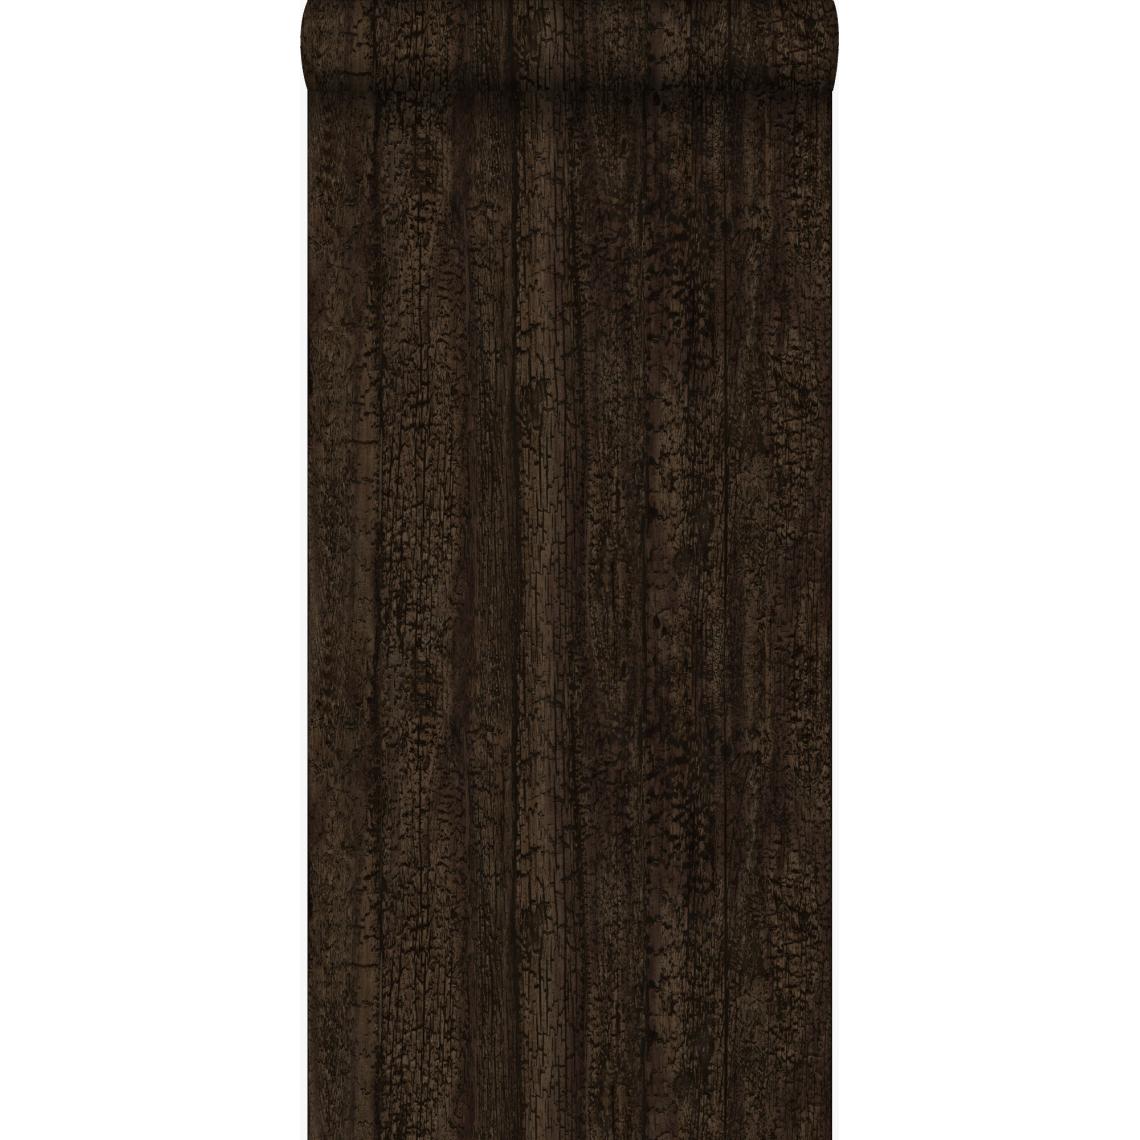 Origin - Origin papier peint imitation bois brun foncé - 347527 - 53 cm x 10.05 m - Papier peint